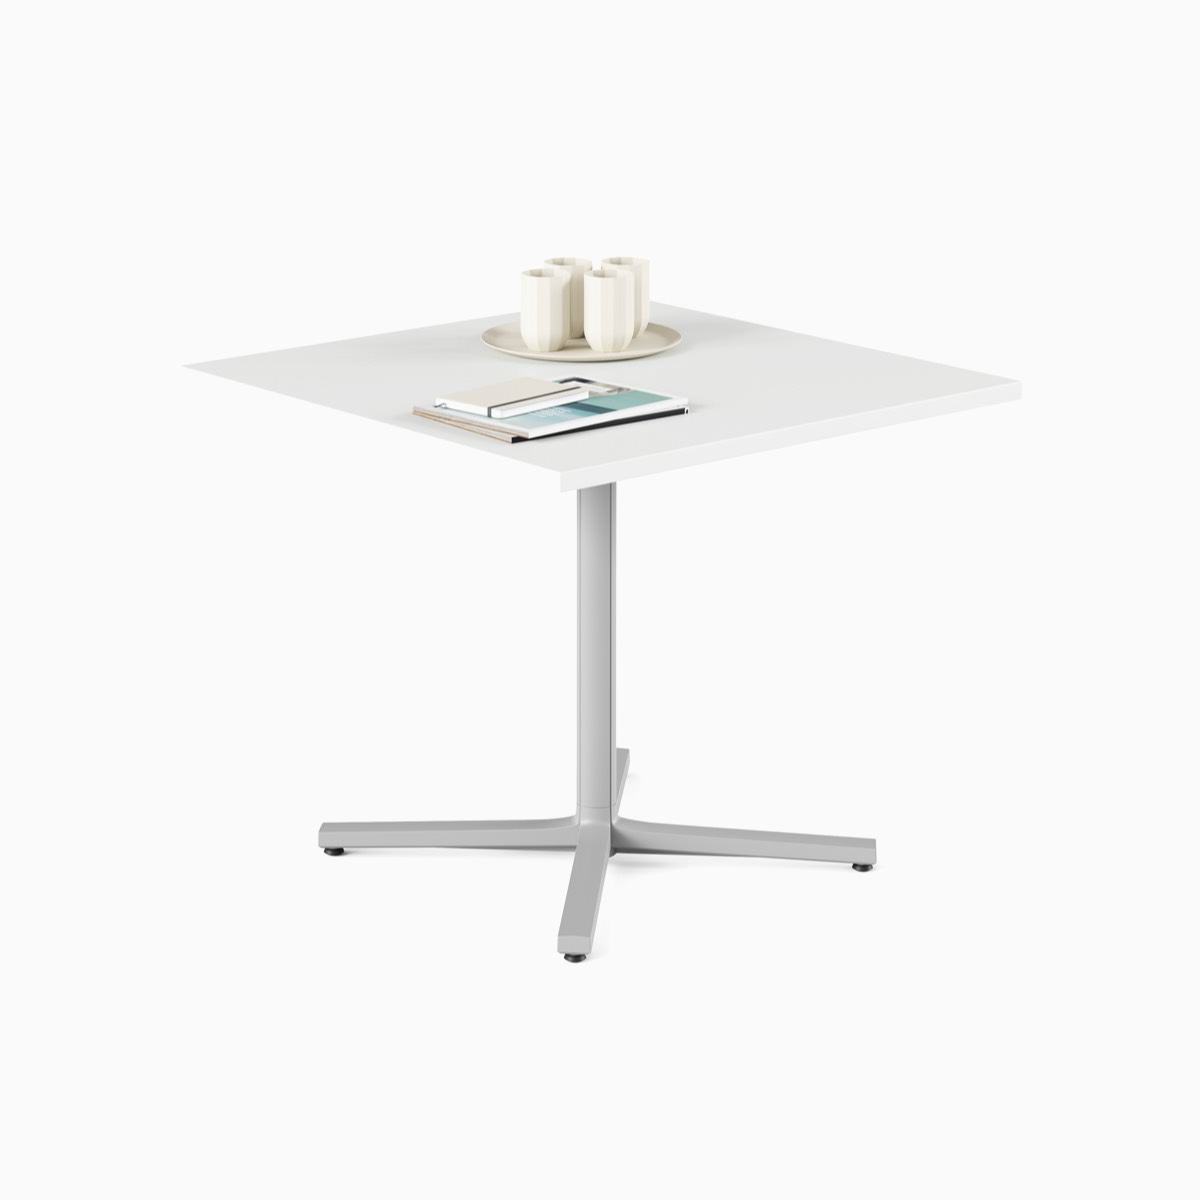 Ein weißer, quadratischer Everywhere Table in Standardhöhe mit grauer Säule.